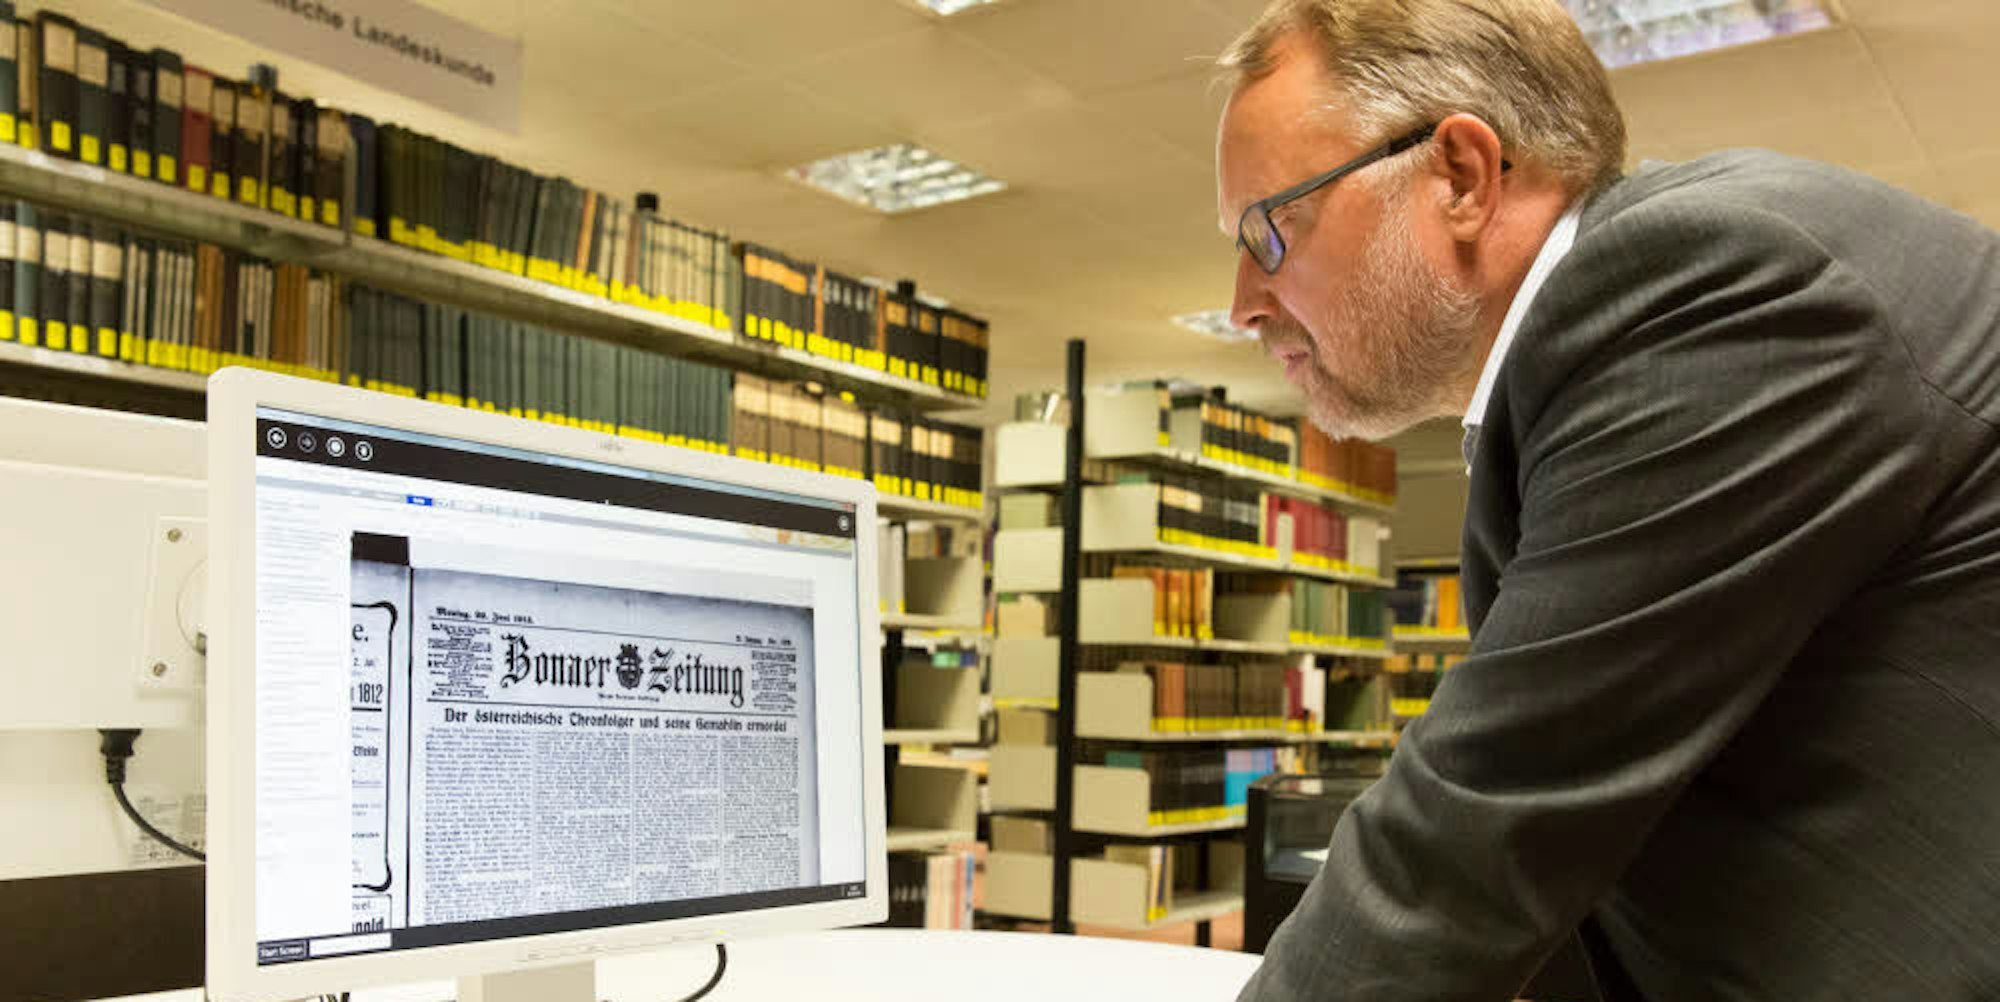 Die digitale Zugriffsmöglichkeit auf die Bonner Zeitung vom 29. Juni 1914 demonstrierte Michael Herkenhoff.